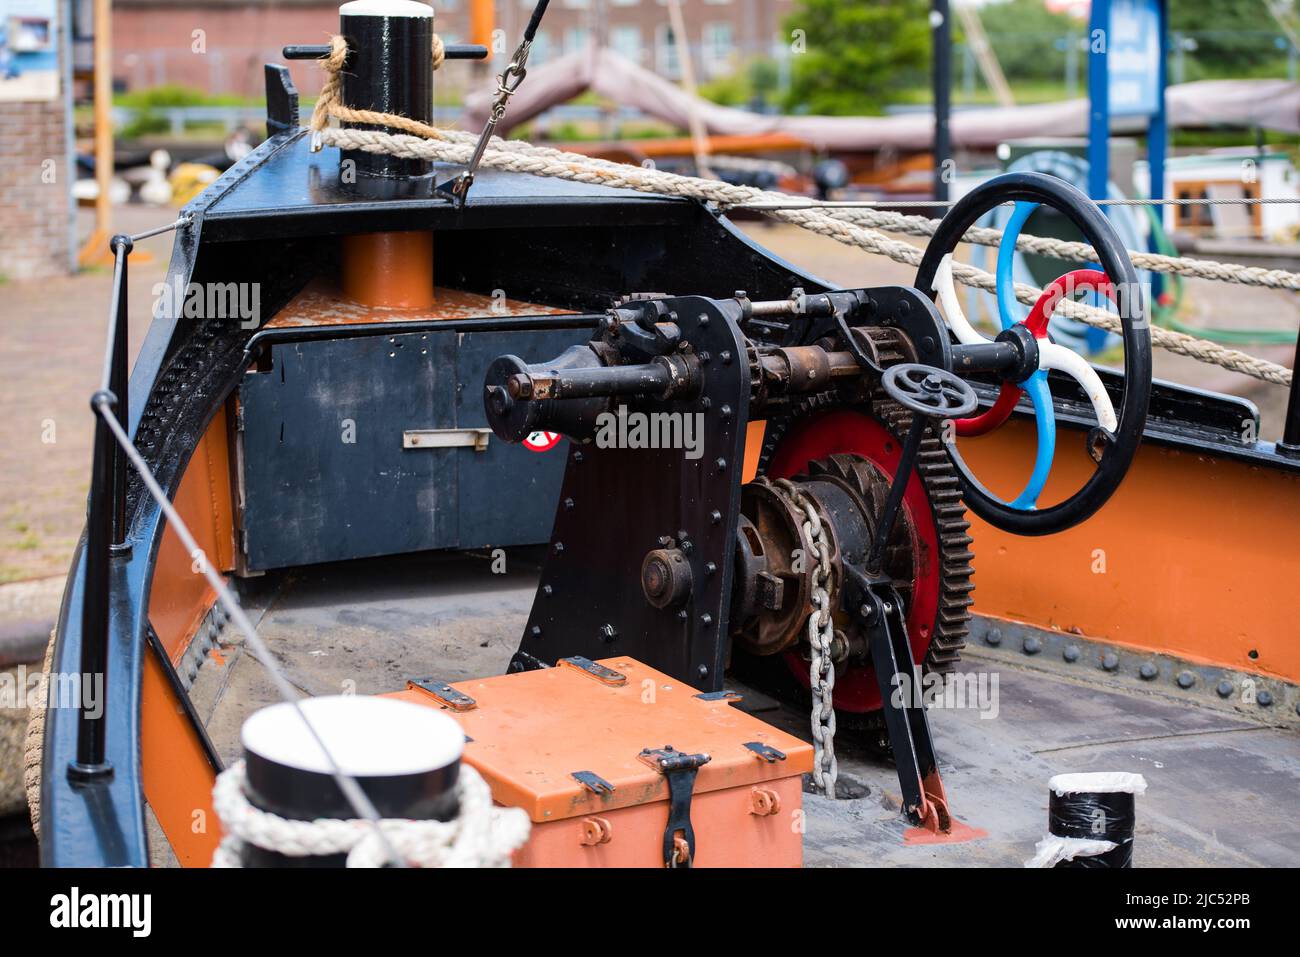 Den Helder, Países Bajos, mayo de 2022. El arco de un antiguo remolcador en el astillero Willemsoord en Den Helder. Fotografías de alta calidad Foto de stock